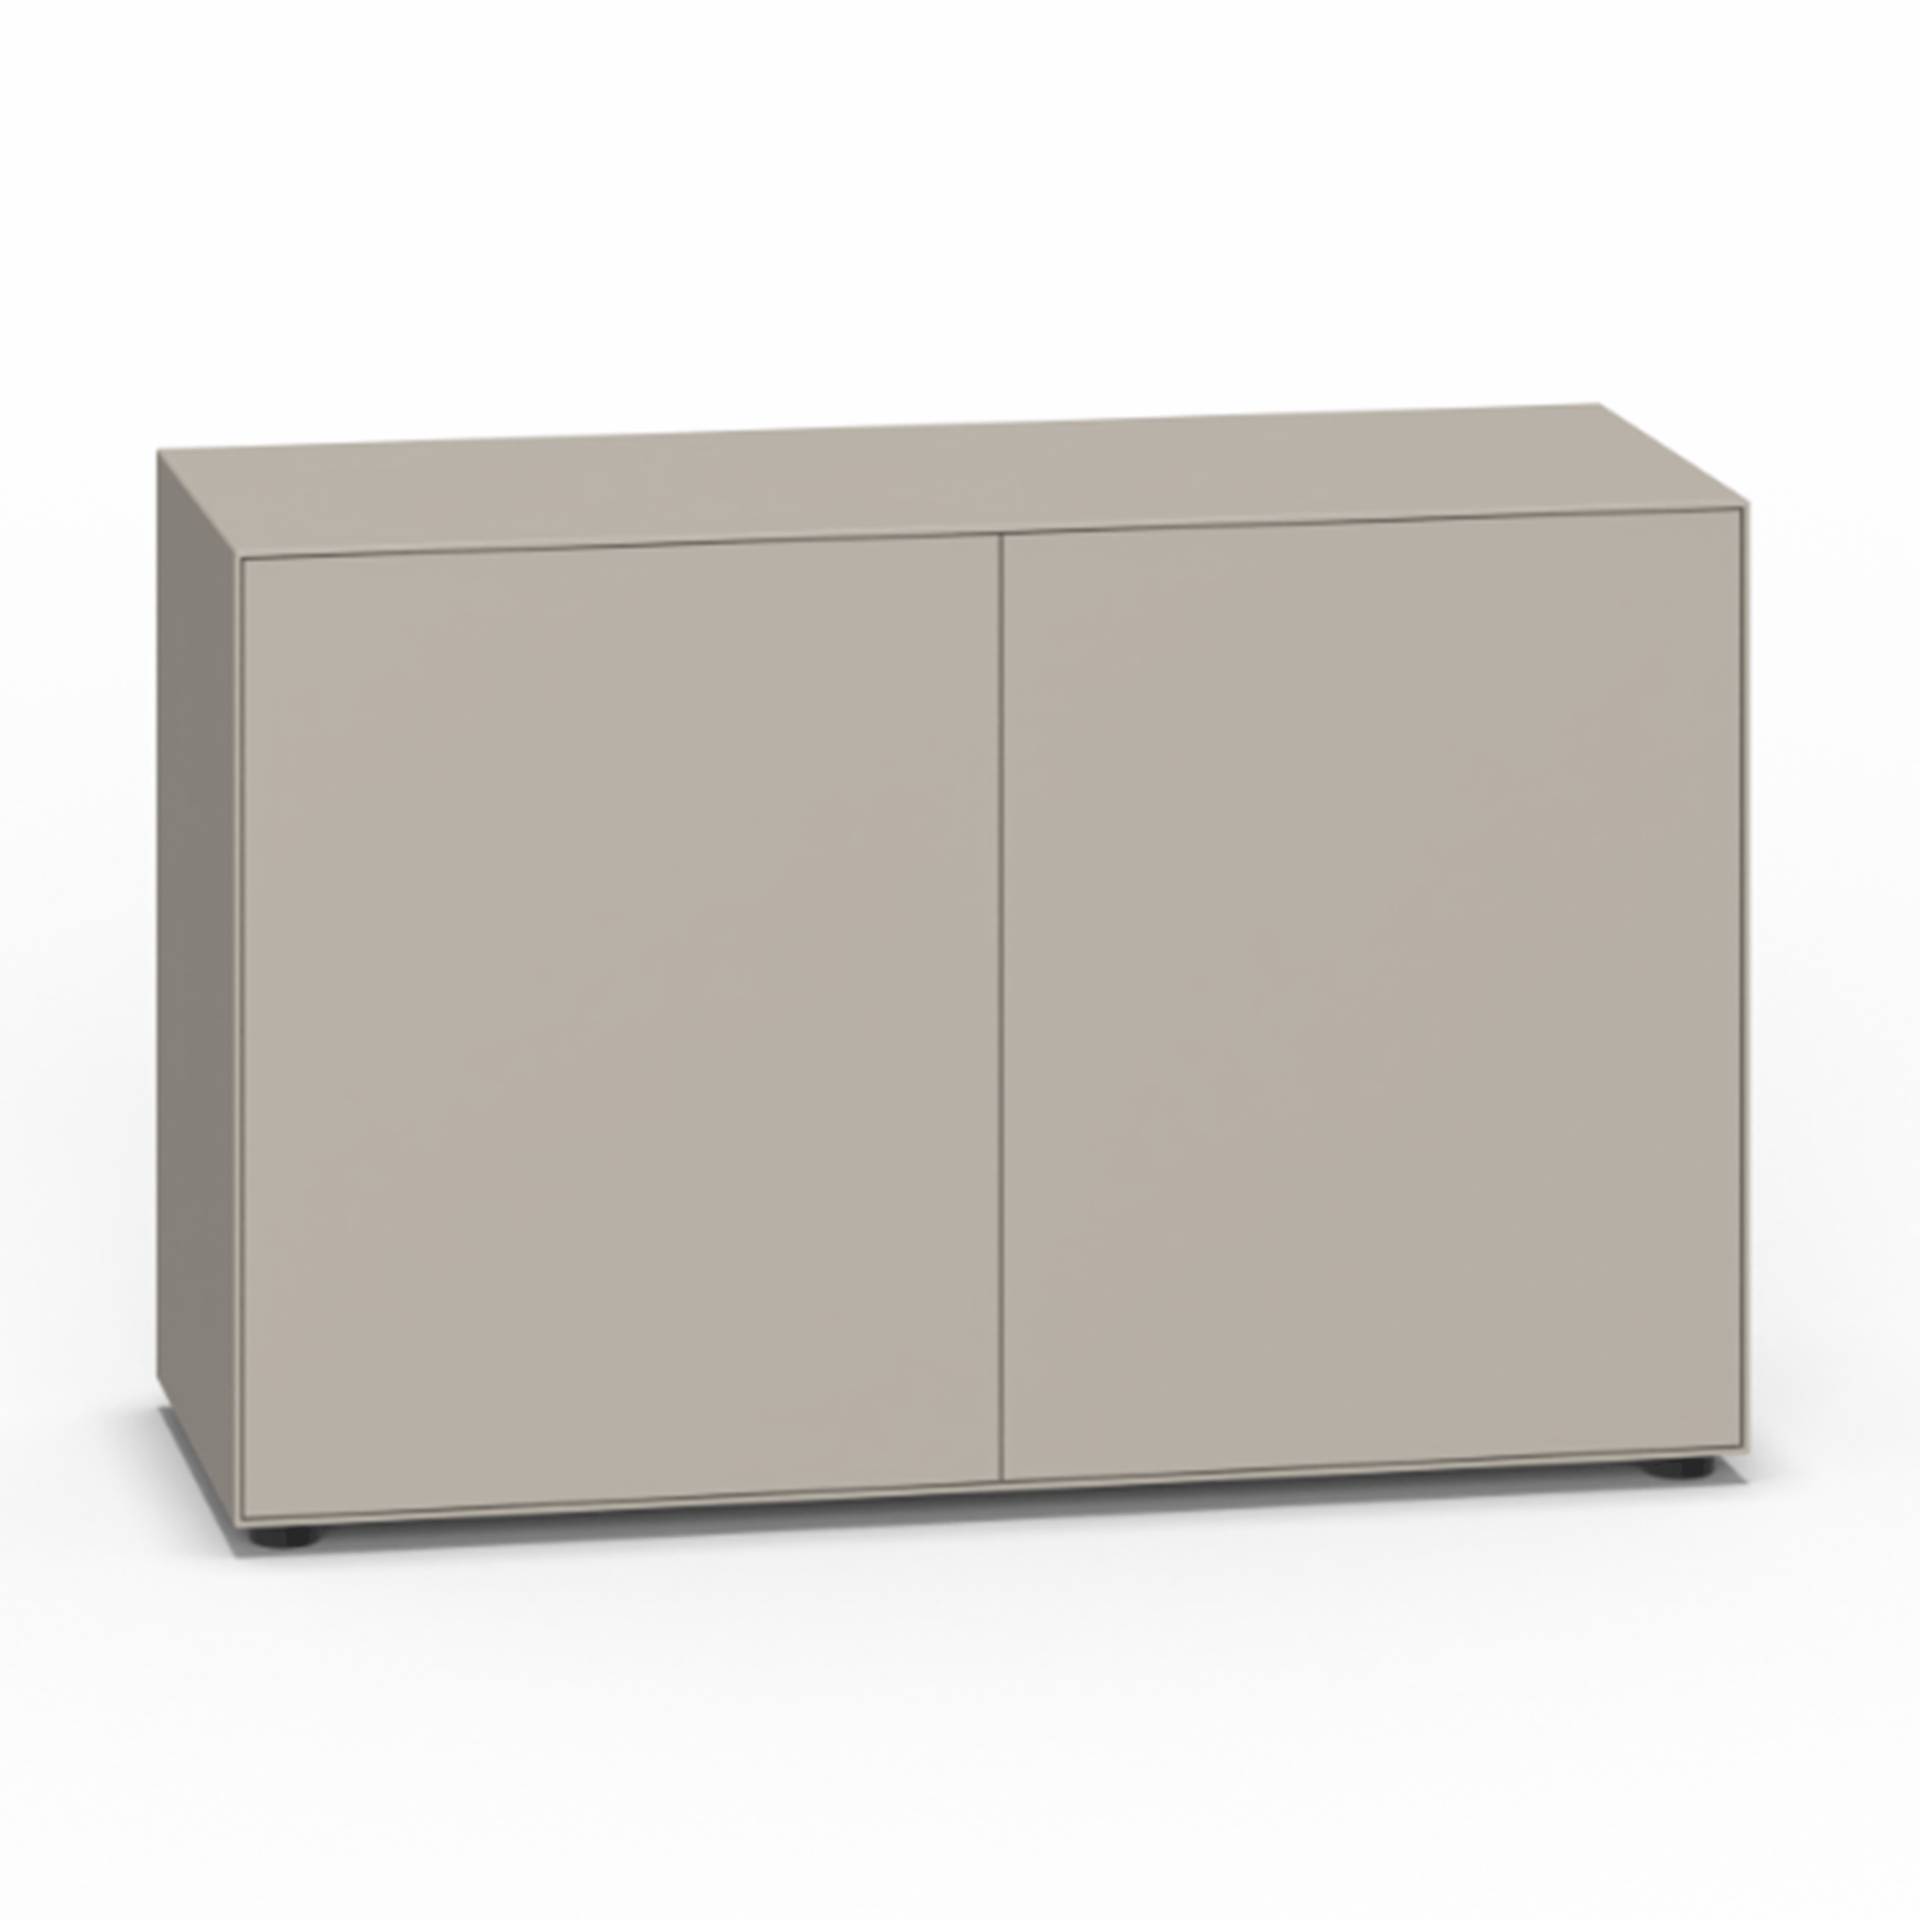 Piure - Nex Pur Box Türbox 120x77.5x48cm - silk/MDF matt lackiert/mit Gleitfüße/1 Fachboden/inkl. Verstärkungsschiene, einstellbar 2 cm von Piure